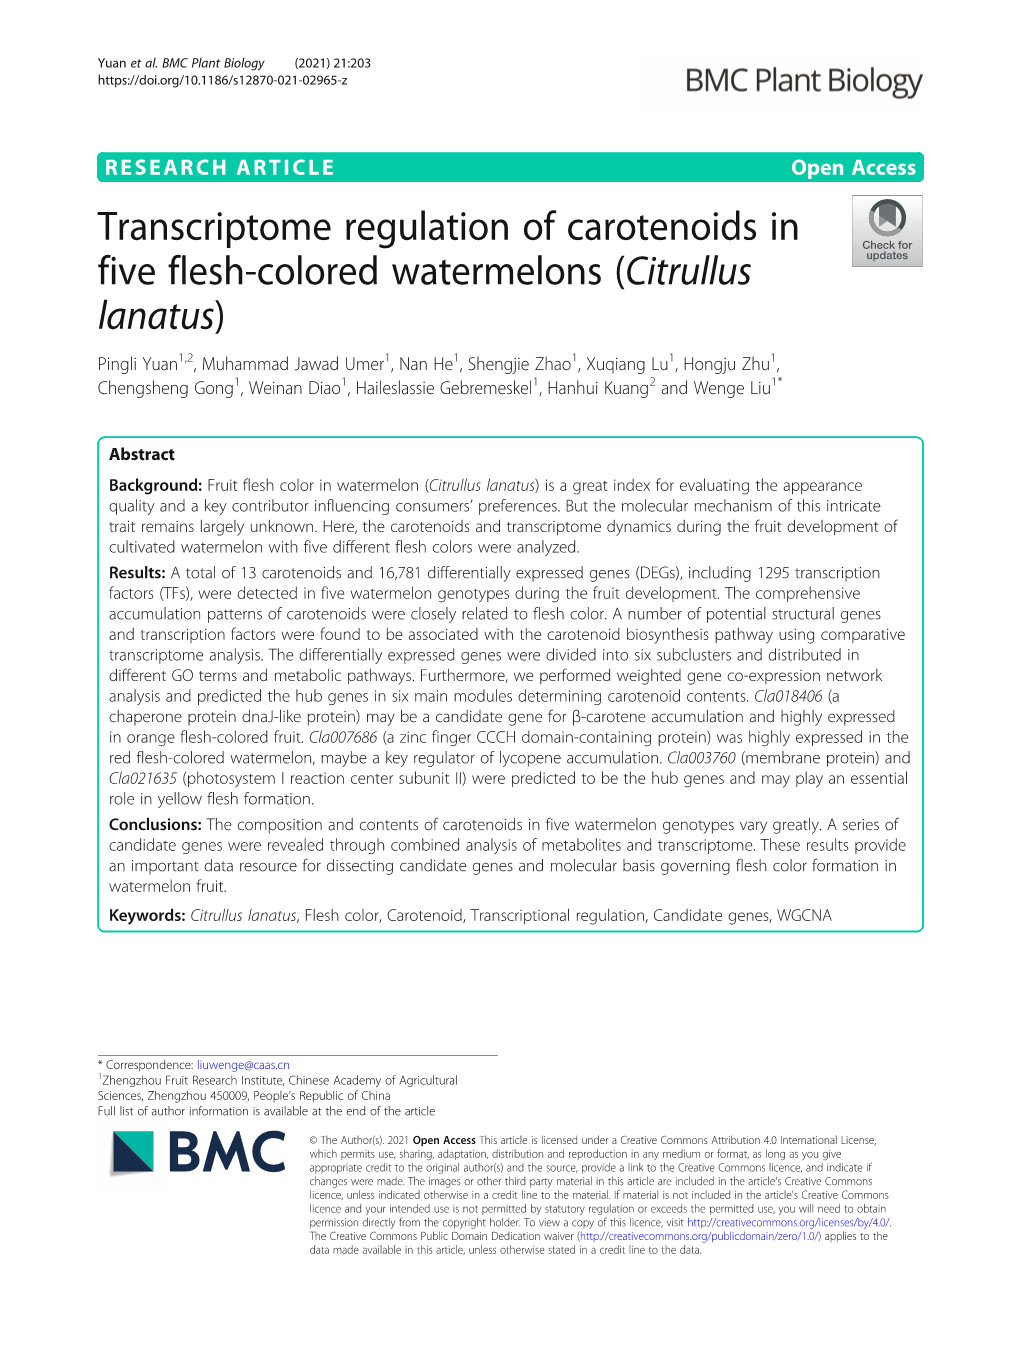 Transcriptome Regulation of Carotenoids in Five Flesh-Colored